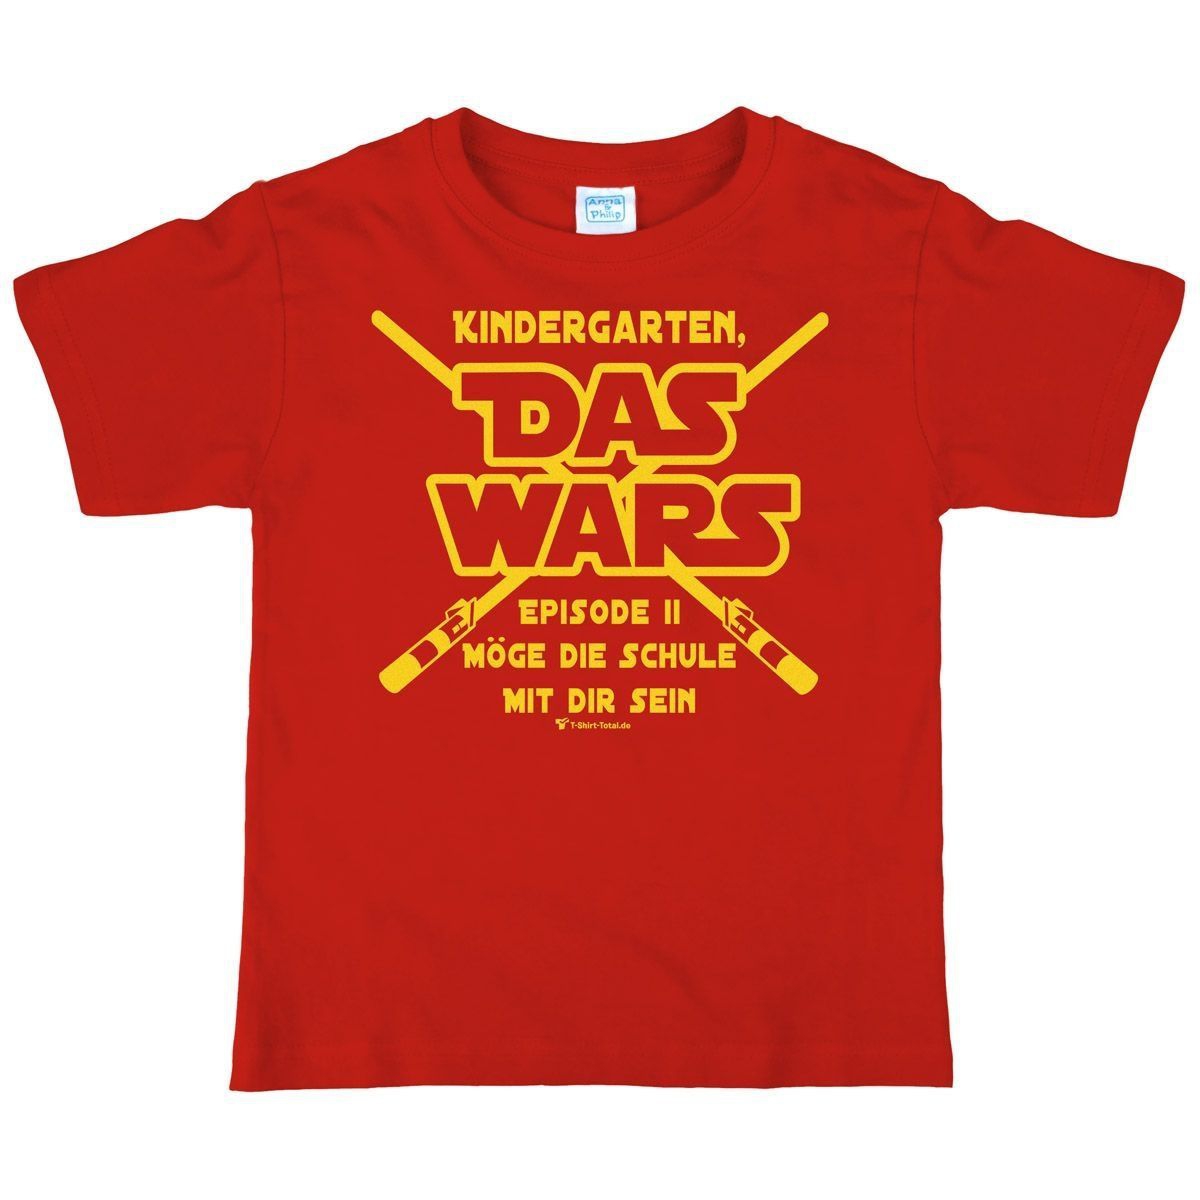 Das wars Kindergarten Kinder T-Shirt rot 122 / 128